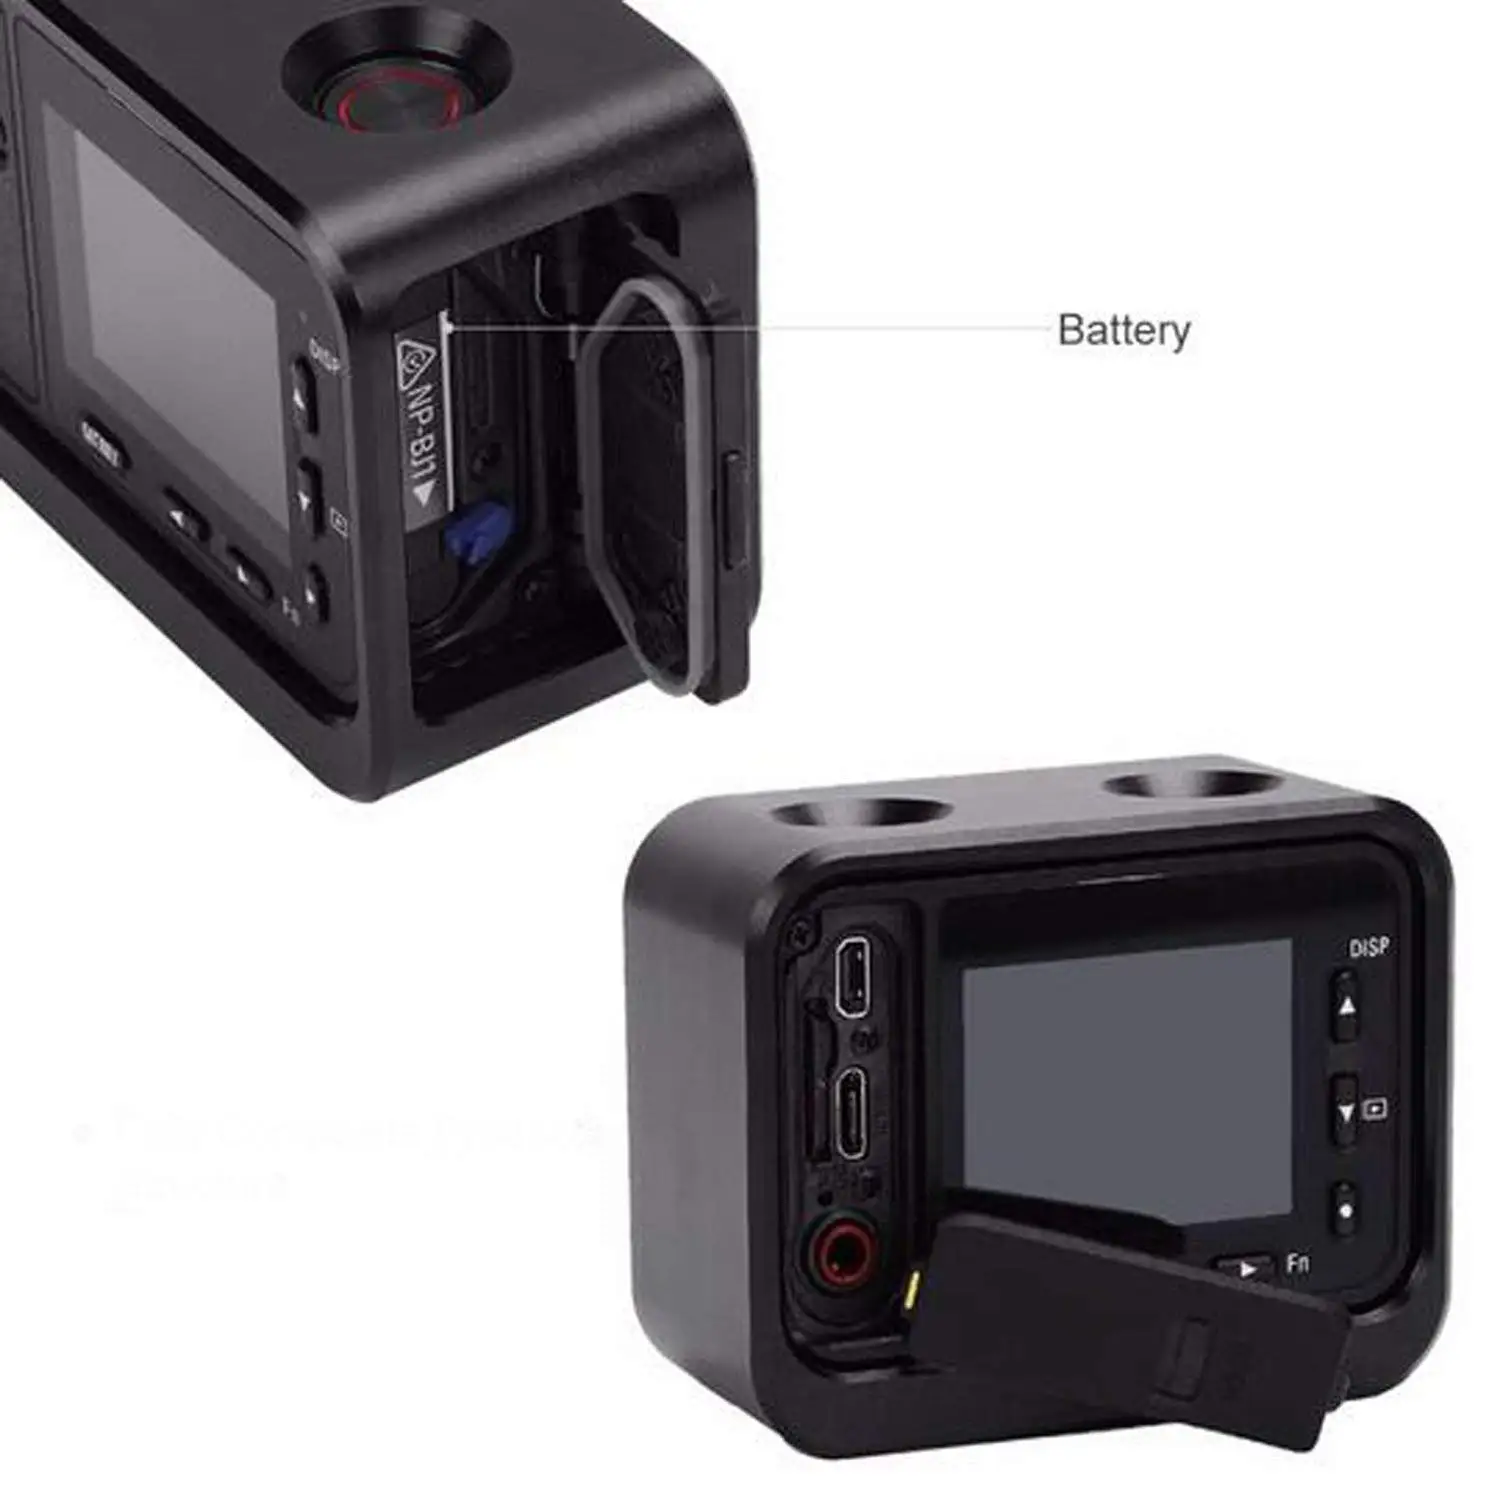 Elos-это Камера металлический корпус, комплект для sony RX0 Корпус основа Алюминий сплав Защитный чехол клетка + 37 мм UV фильтр объектива + экран